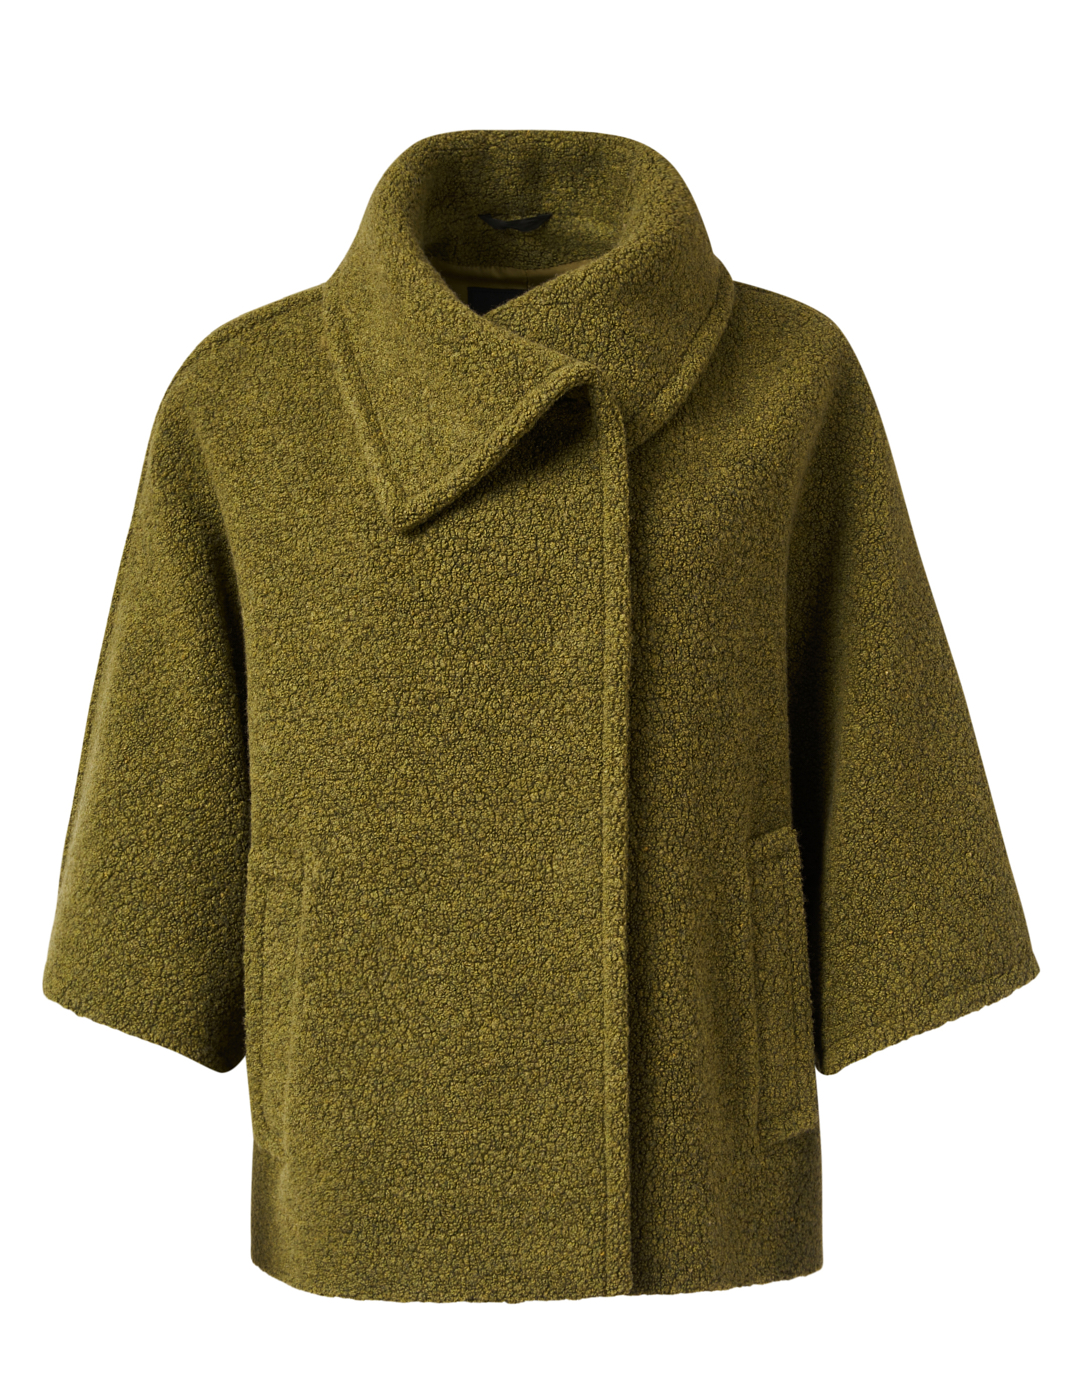 Wool Blend A Line Long Overcoat  Long wool coat women, Tweed